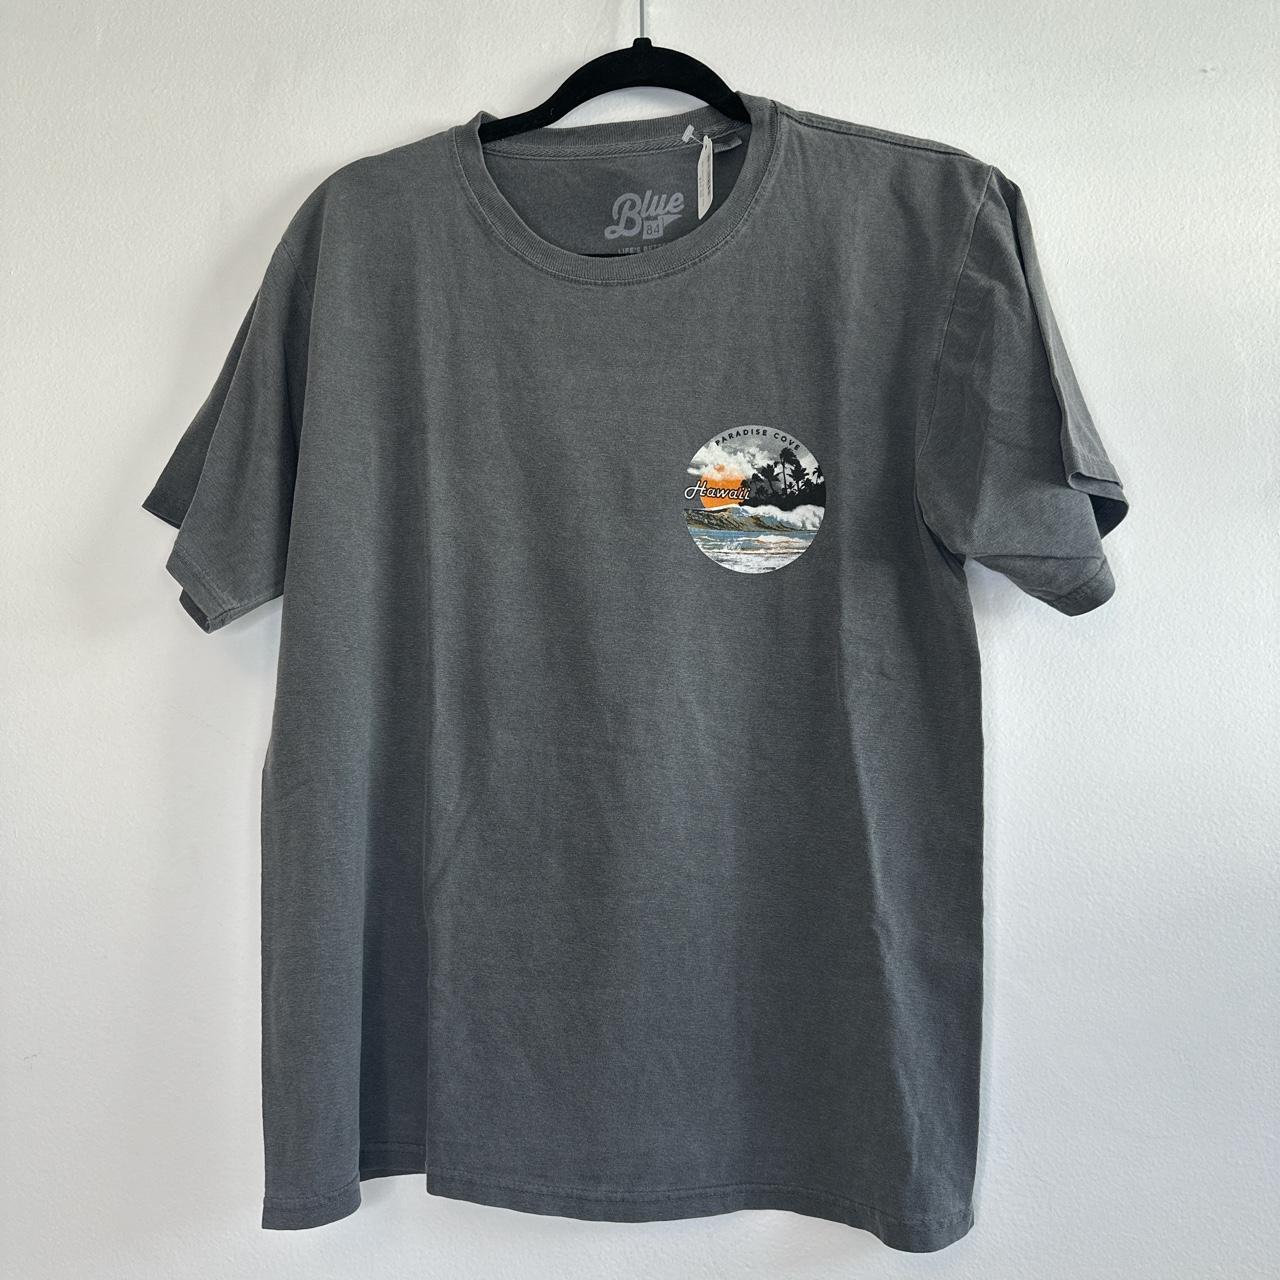 NEW BLUE 84 “Hawaii Paradise Cove” Grey T-Shirt... - Depop